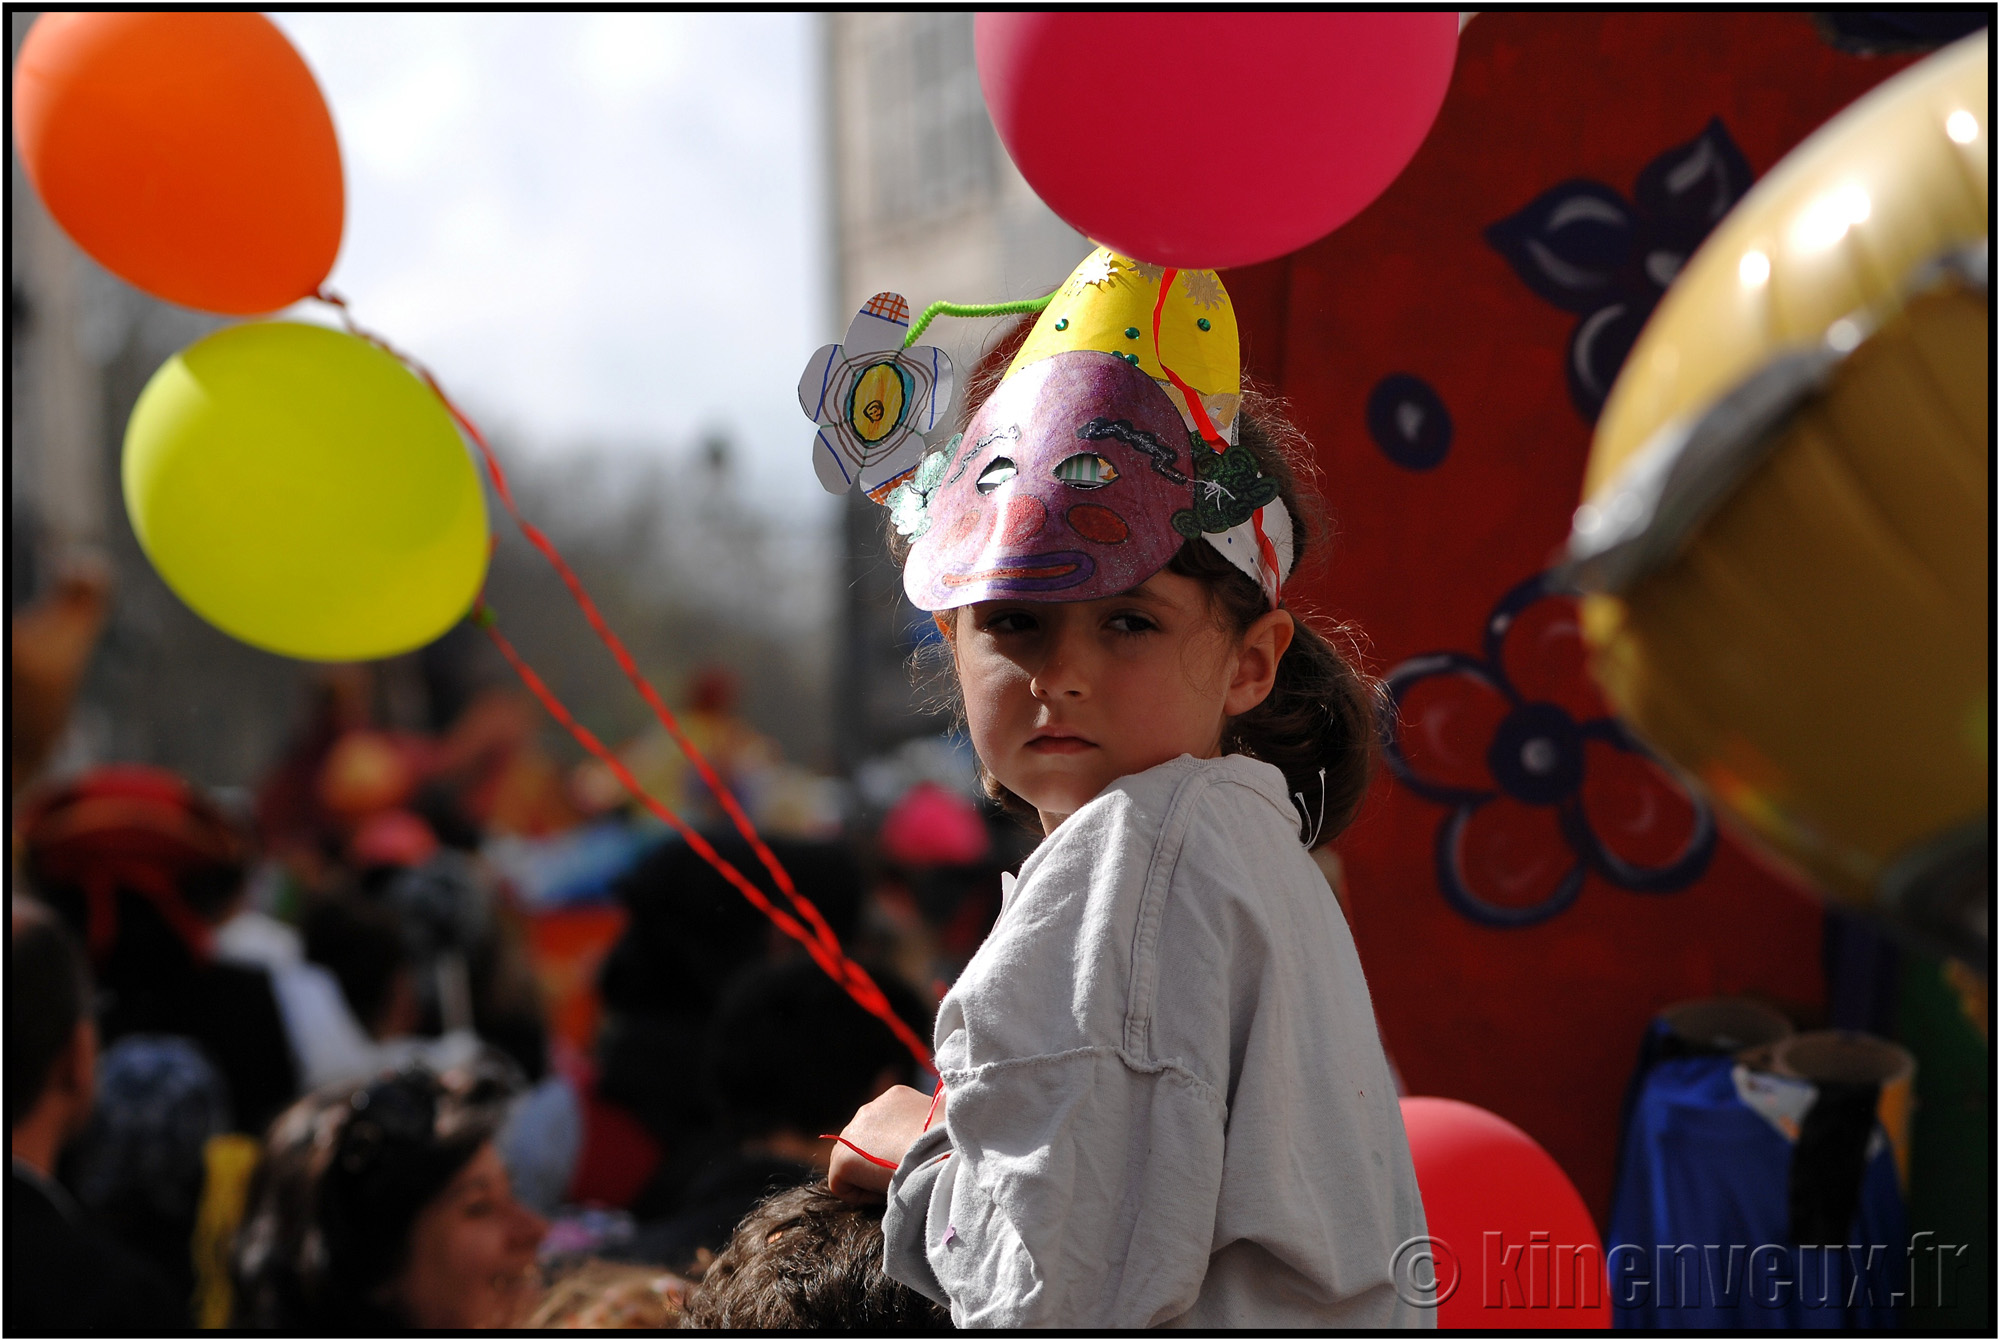 kinenveux_75_carnaval2015lr.jpg - Carnaval des Enfants 2015 - La Rochelle